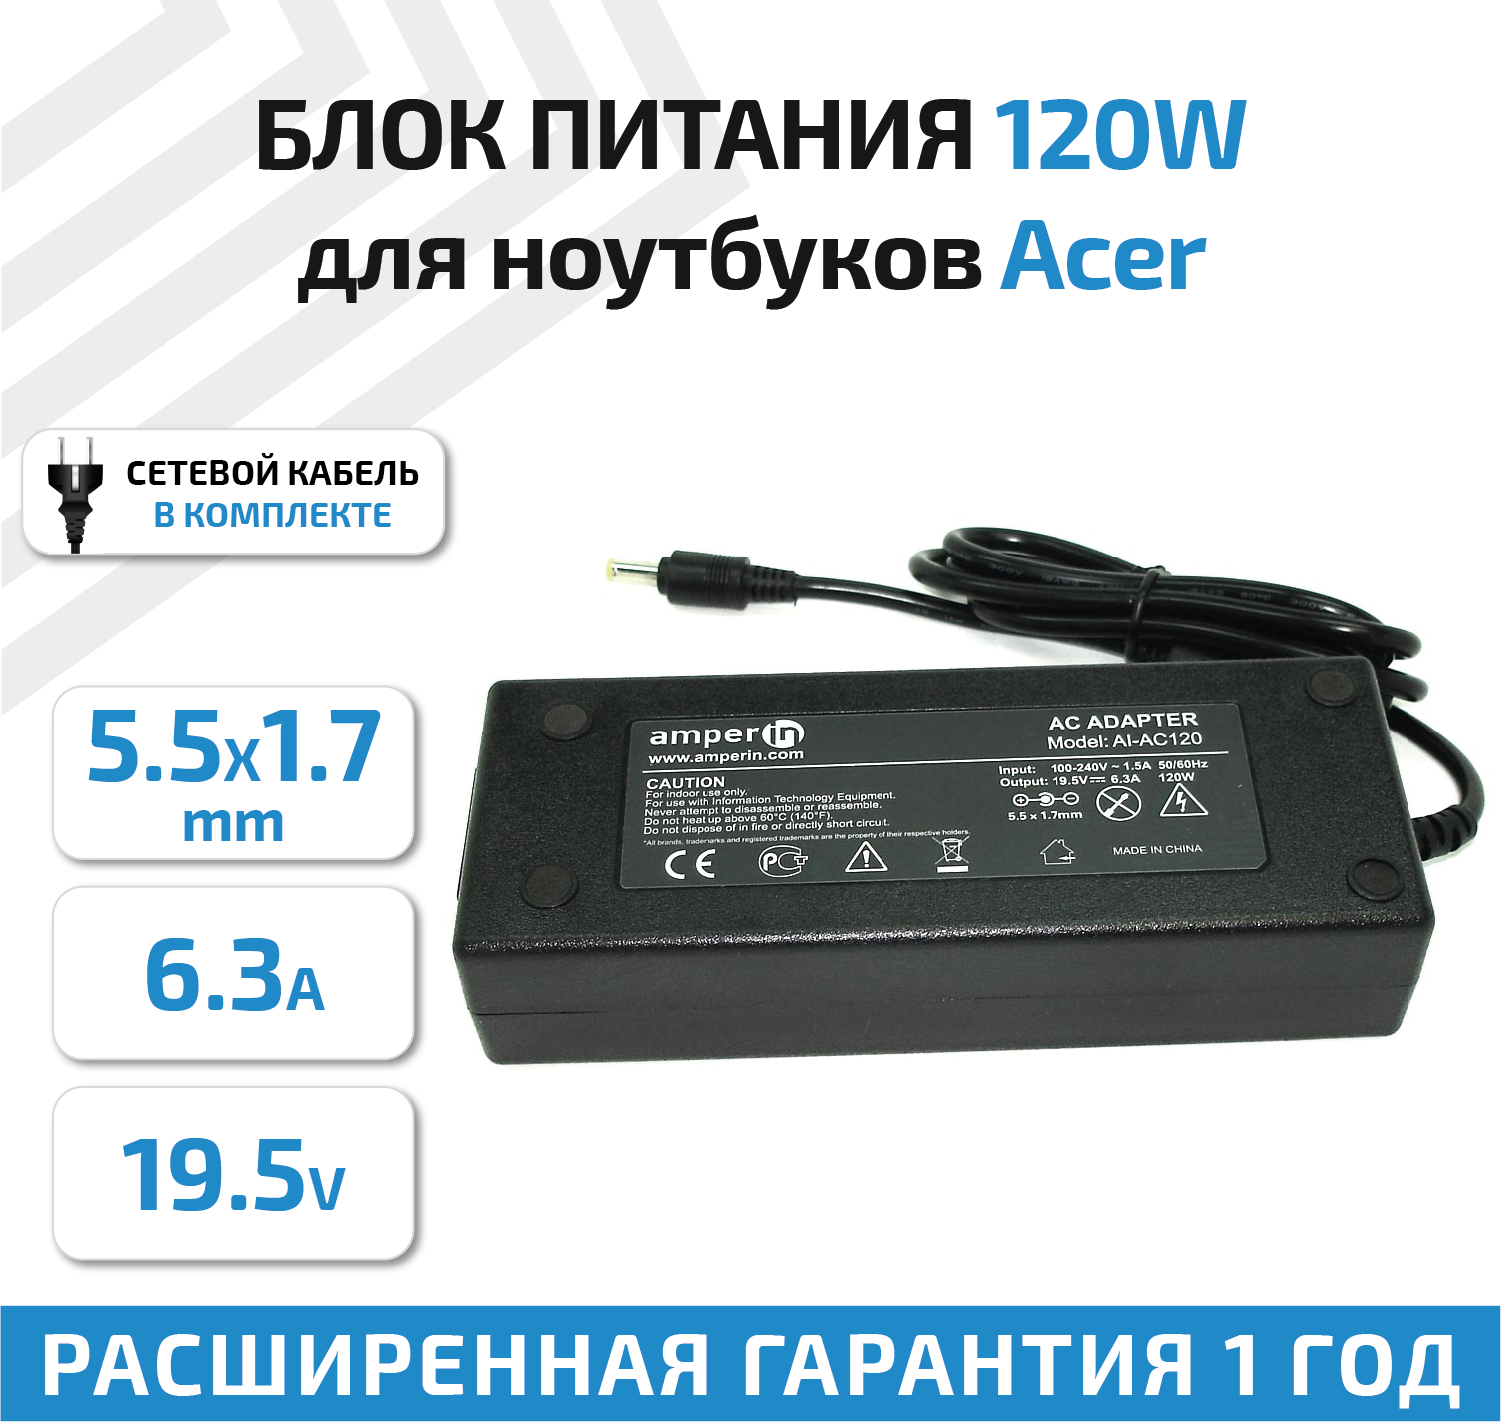 Зарядное устройство (блок питания/зарядка) Amperin AI-AC120 для ноутбука Acer 19В, 6.3А, 5.5x1.7мм